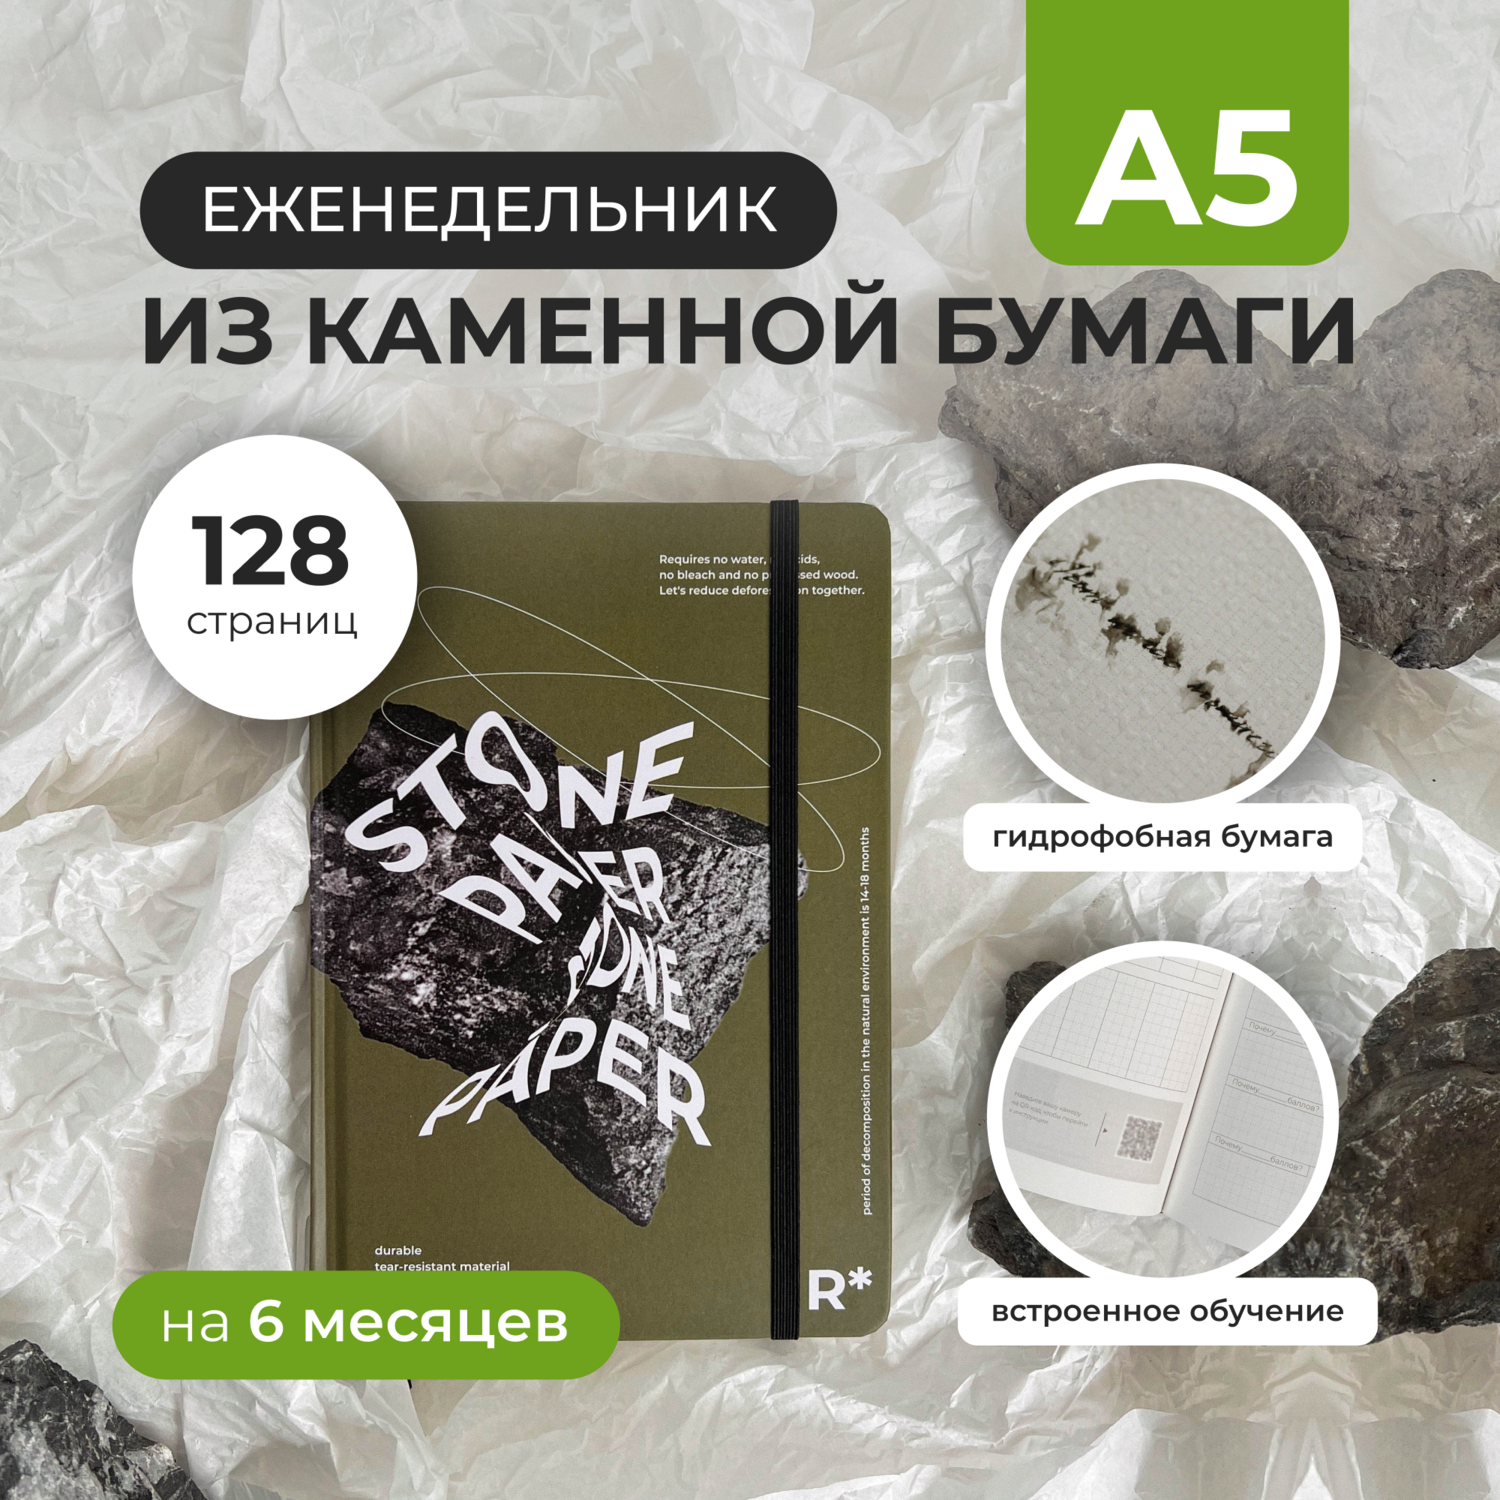 Еженедельник StonePaper "Olive" А5 (распродажа, загрязнение)